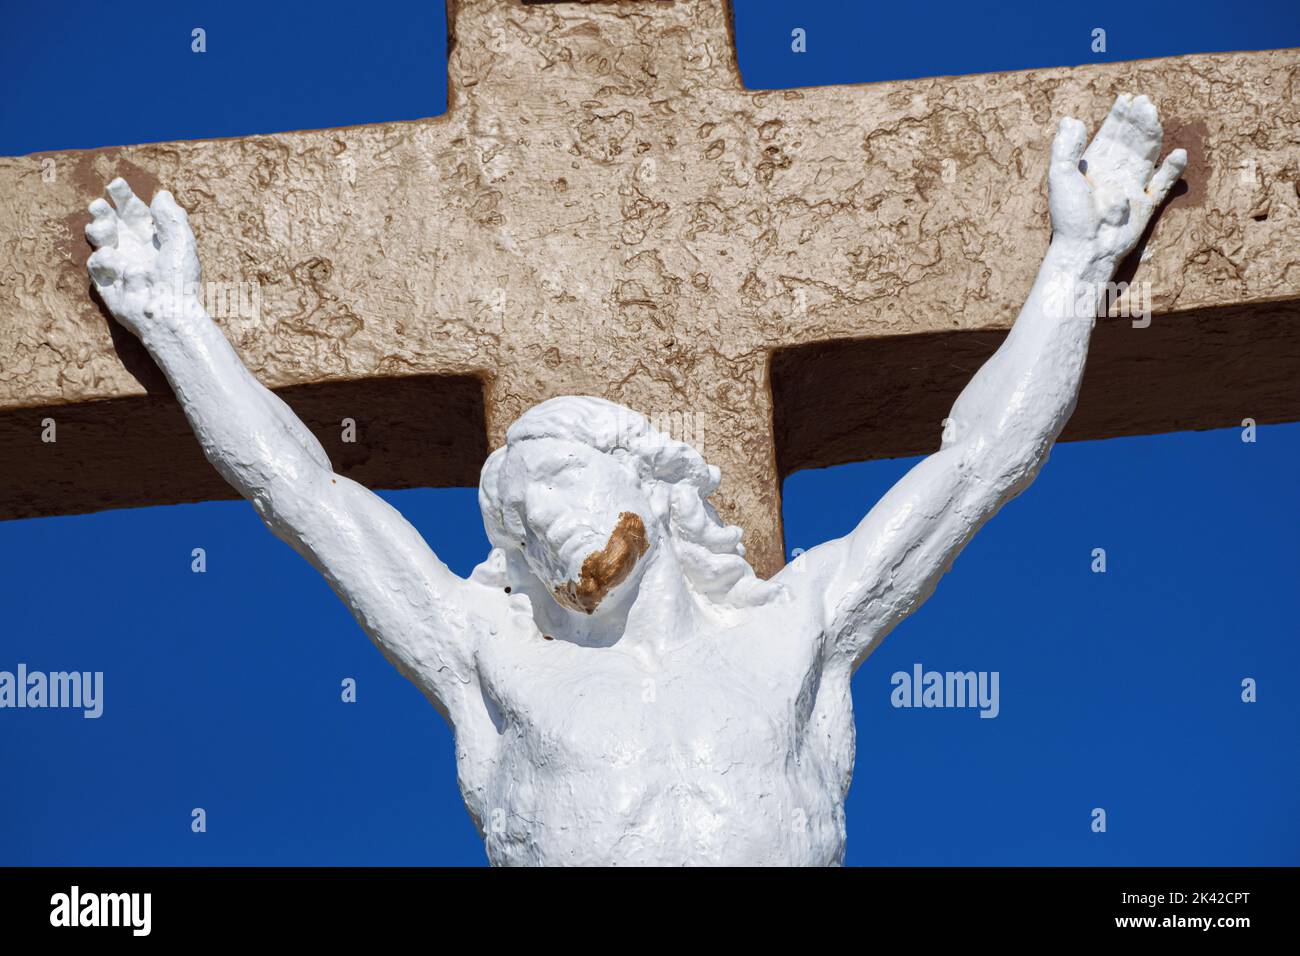 Estatua de Cristo en la cruz contra un cielo azul en Francia Foto de stock